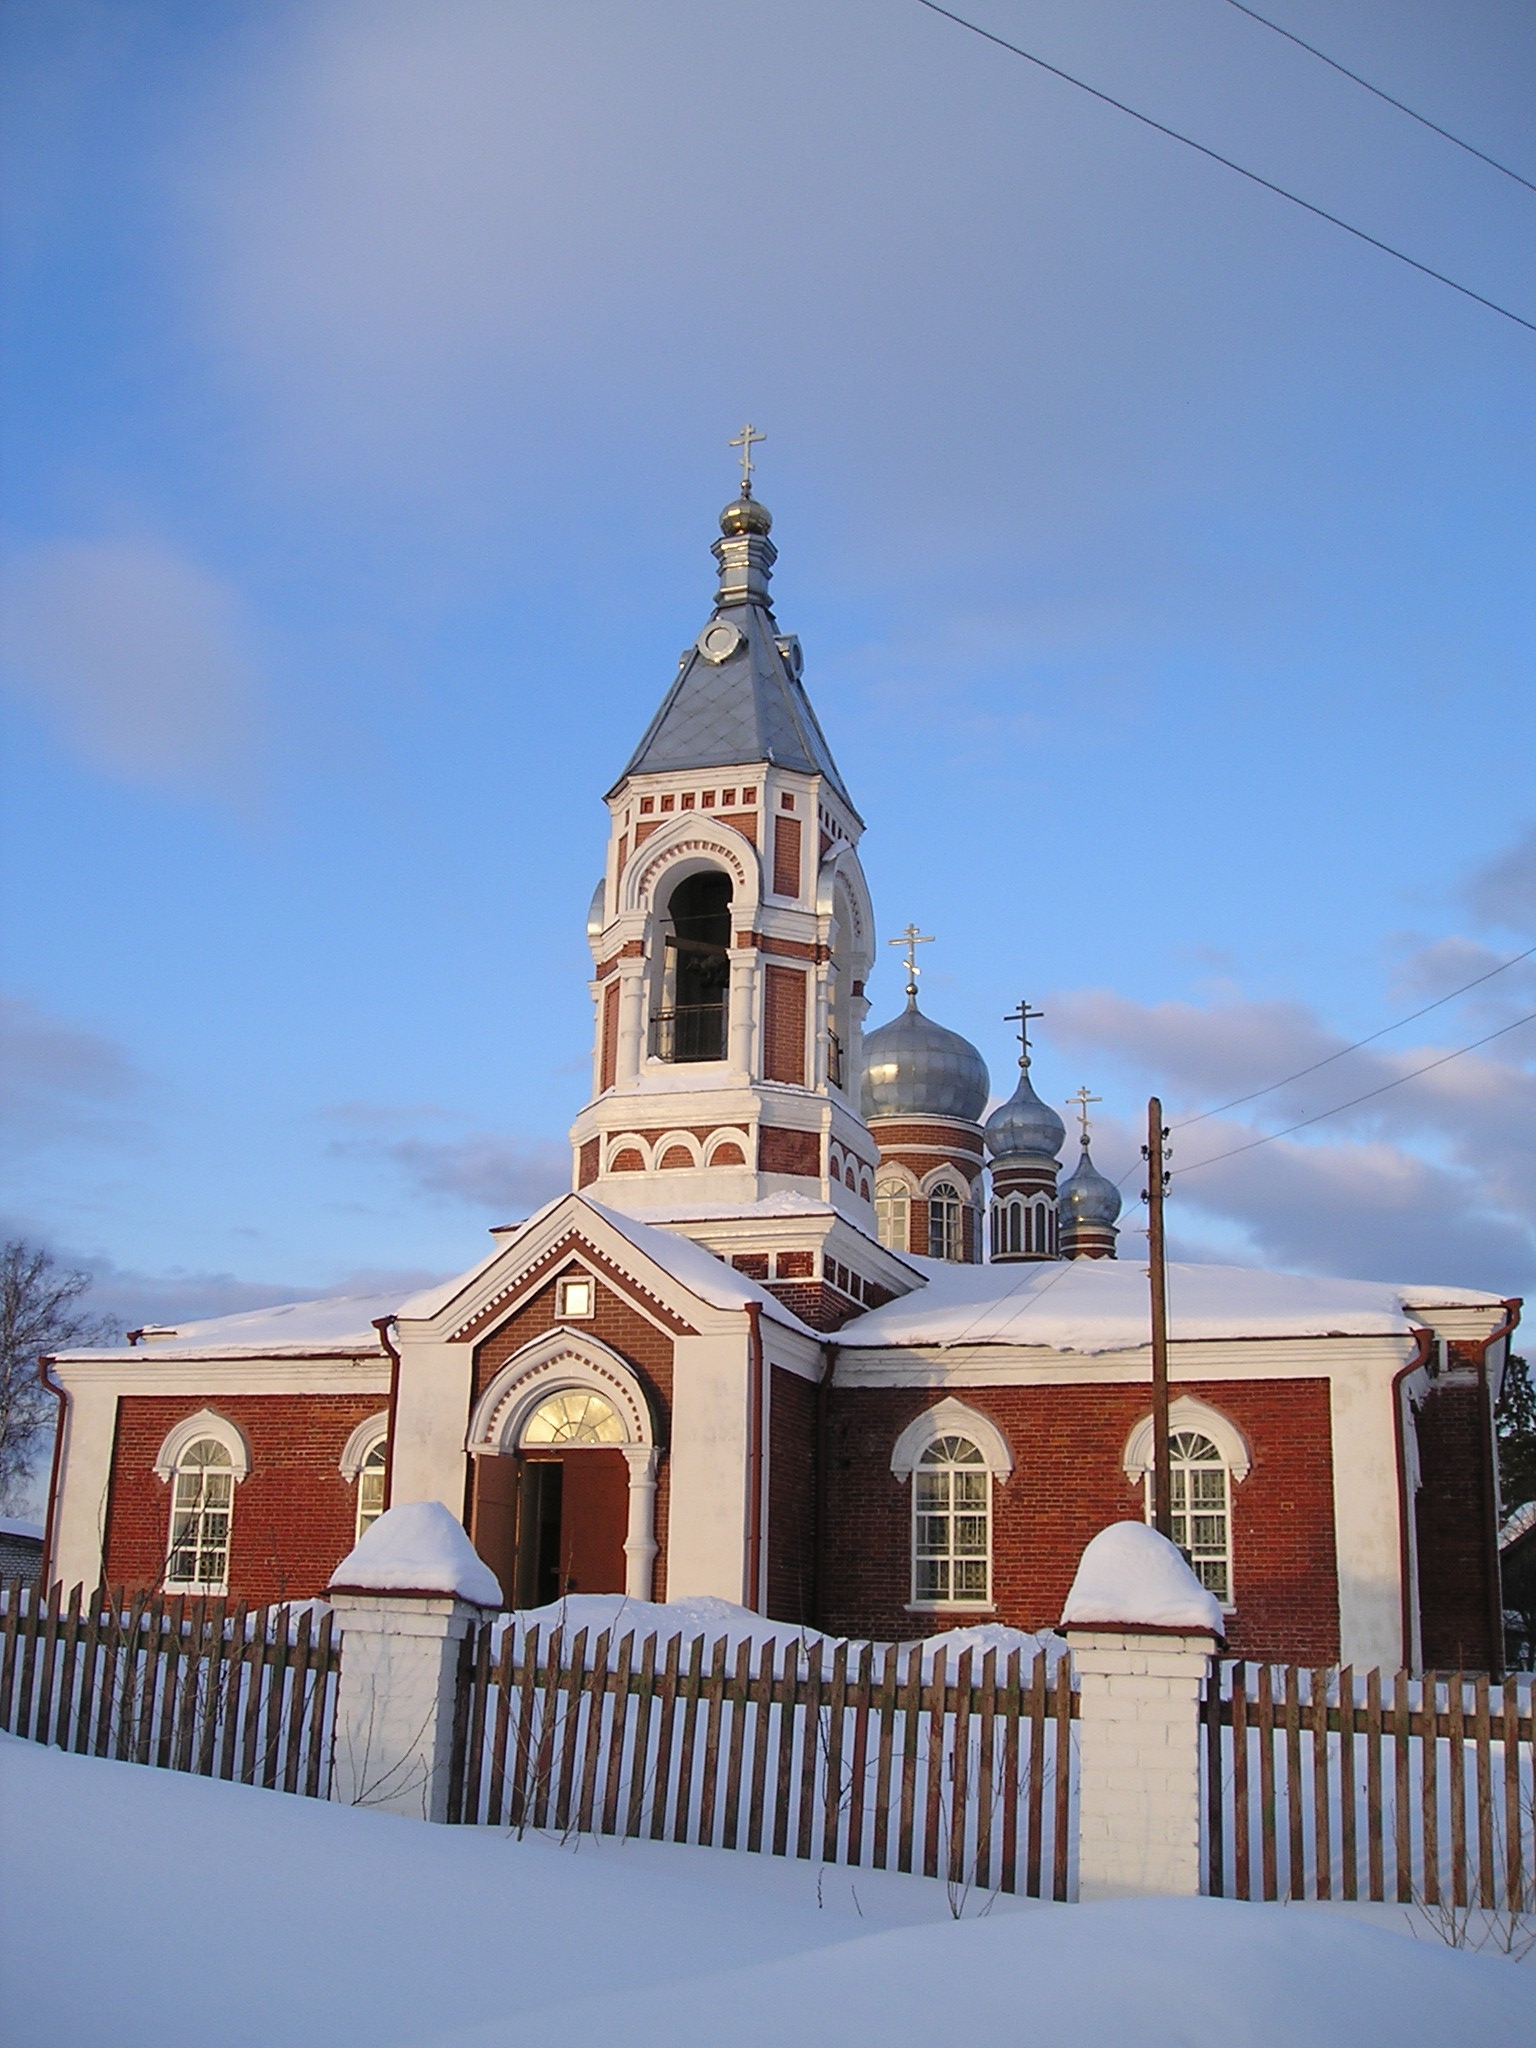 Статья о небольшом городке Ветлуге, который находится севере Нижегородской области.